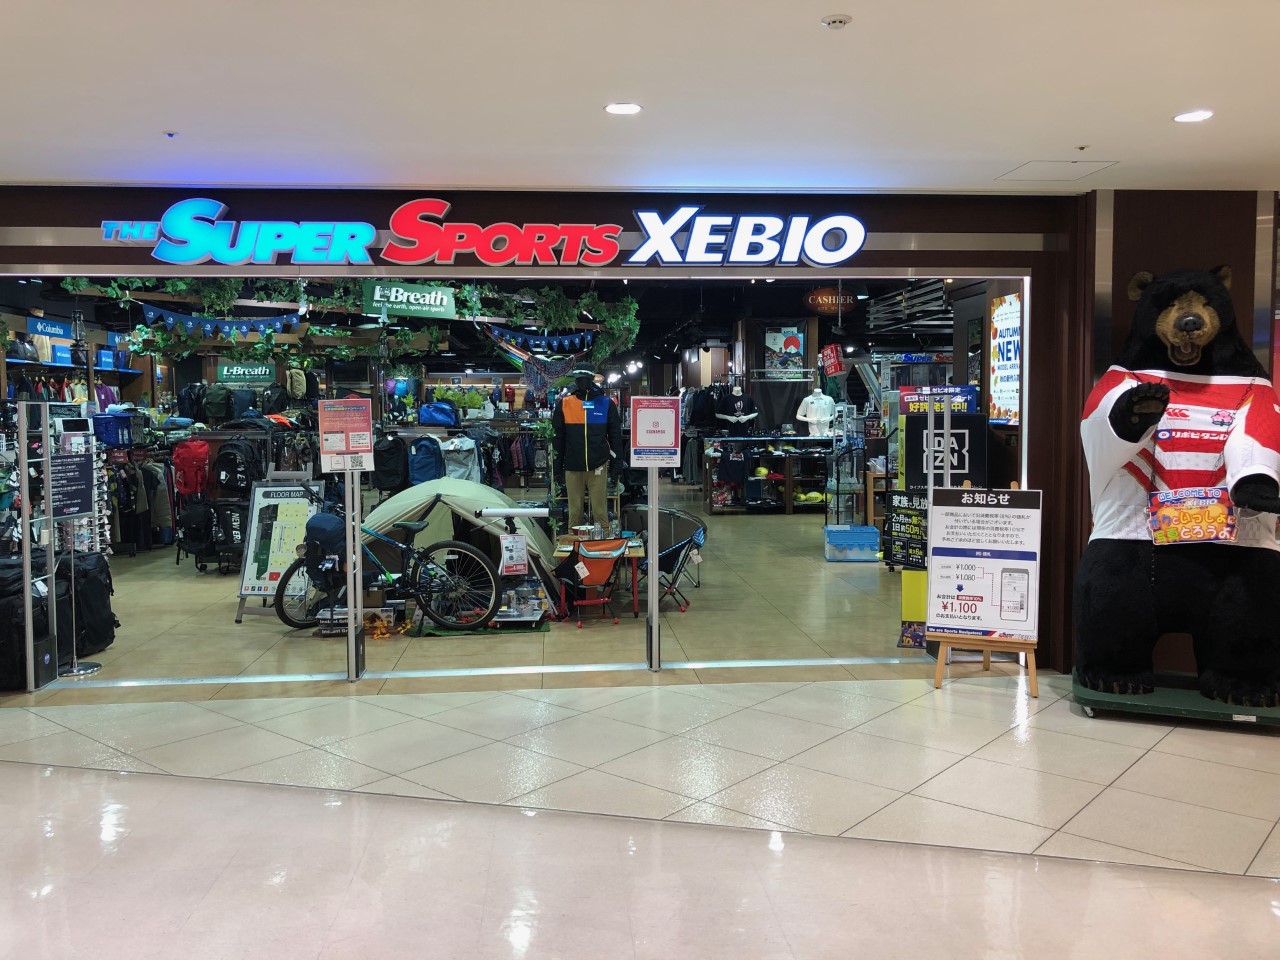 スーパースポーツゼビオ なんばパークス店 大阪府 大阪市 Super Sports Xebio スーパースポーツゼビオ ゼビオスポーツ オフィシャルサイト